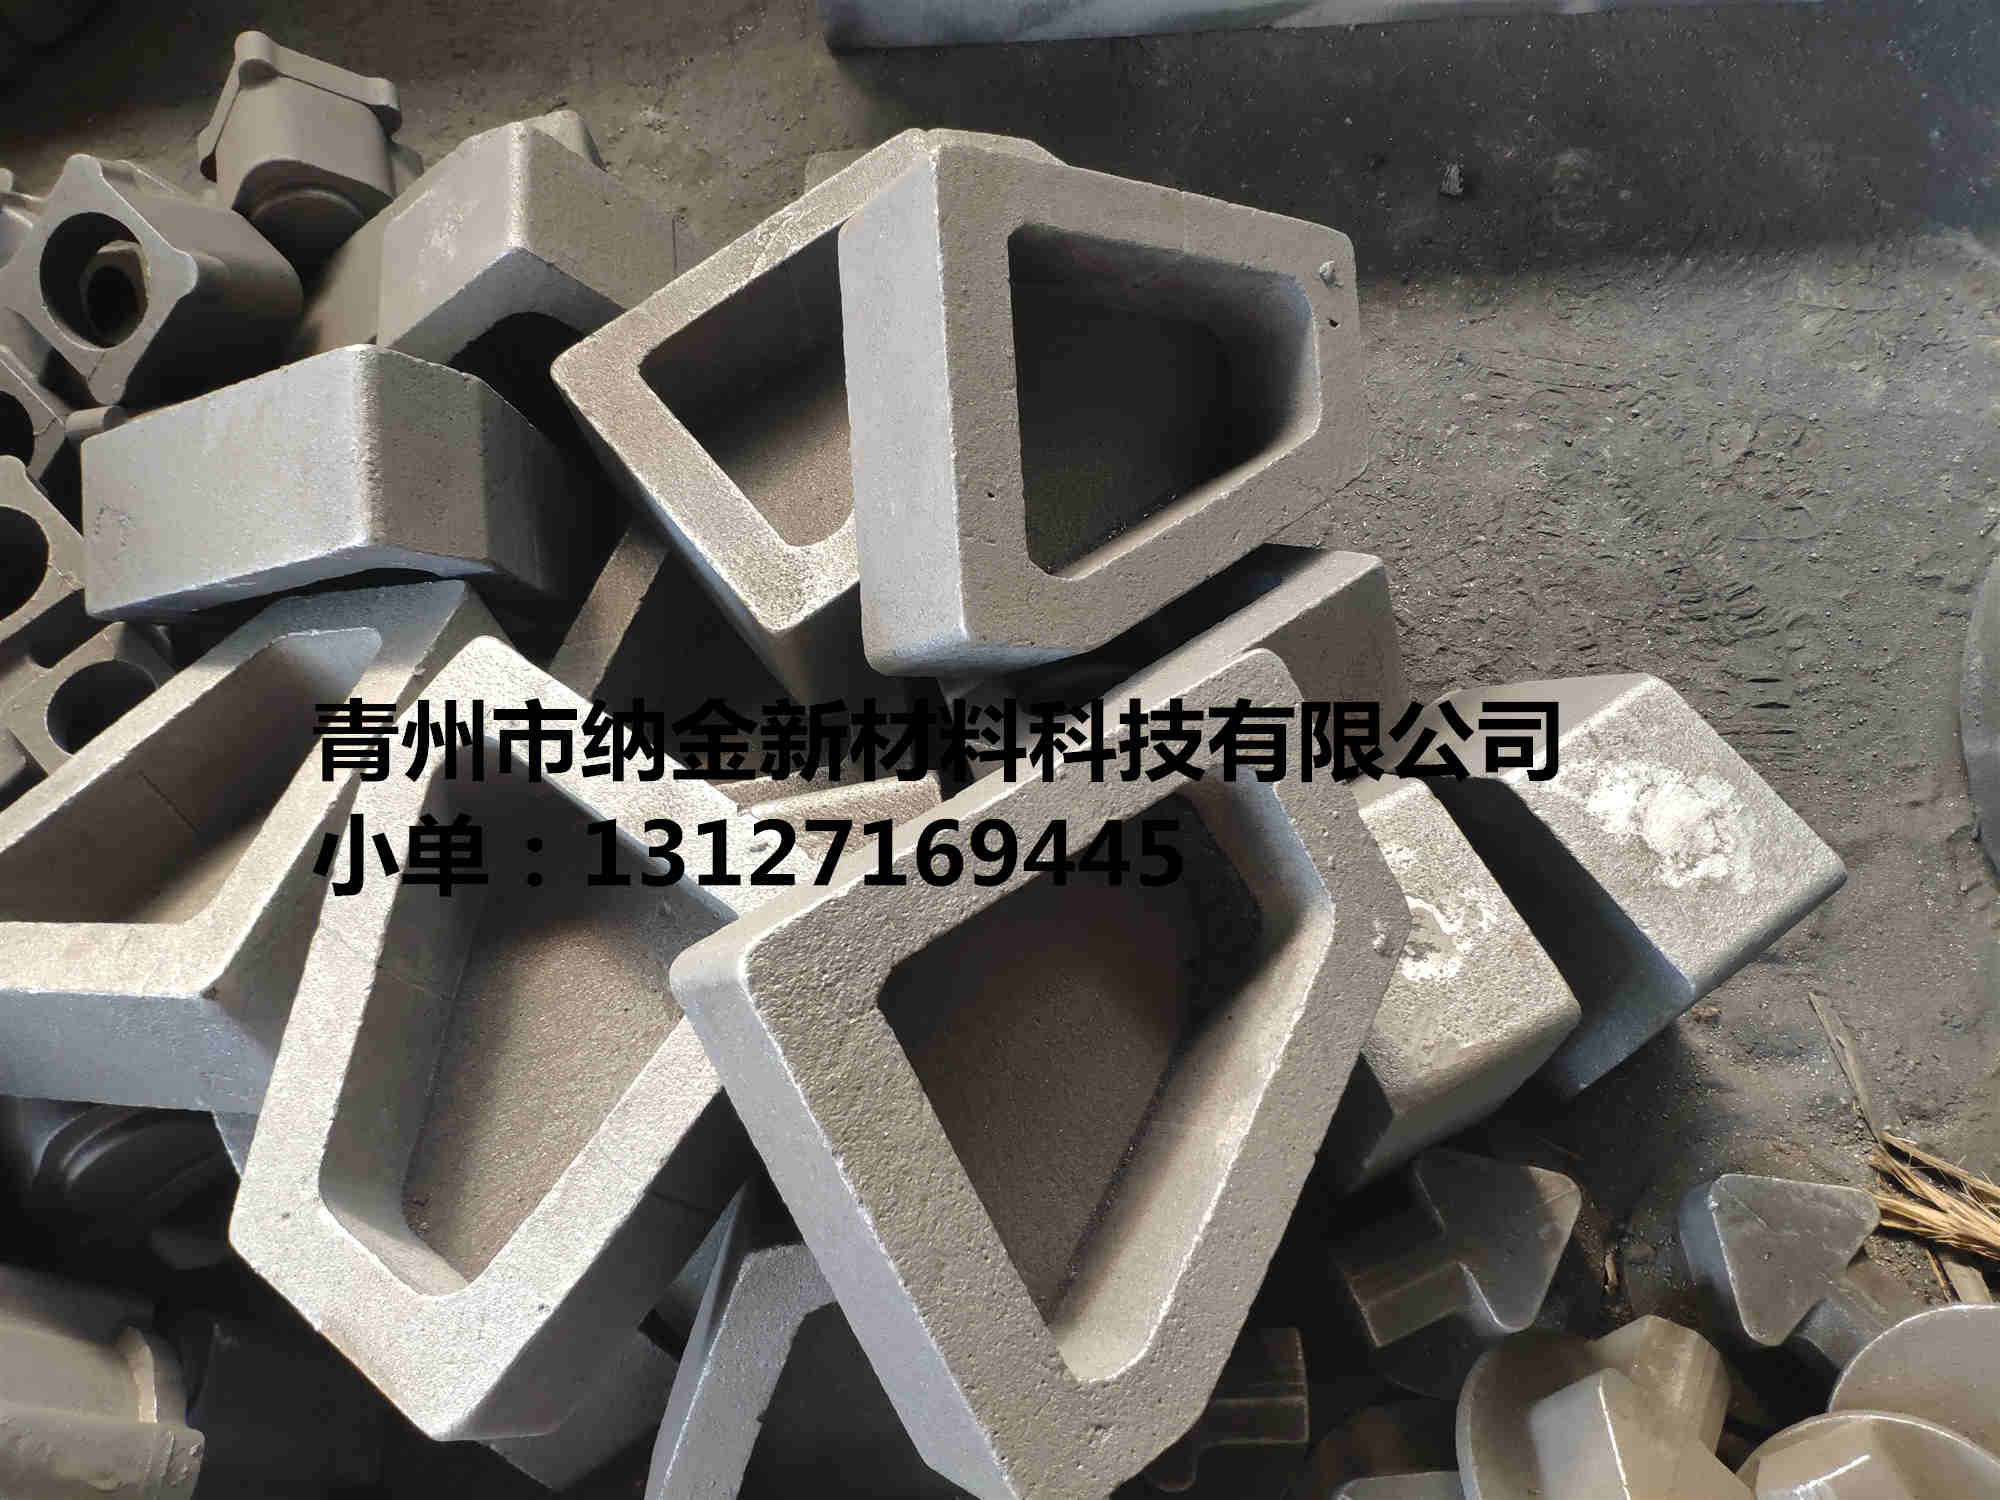 铸造厂生产加工铸铁件 生铁铸件批发